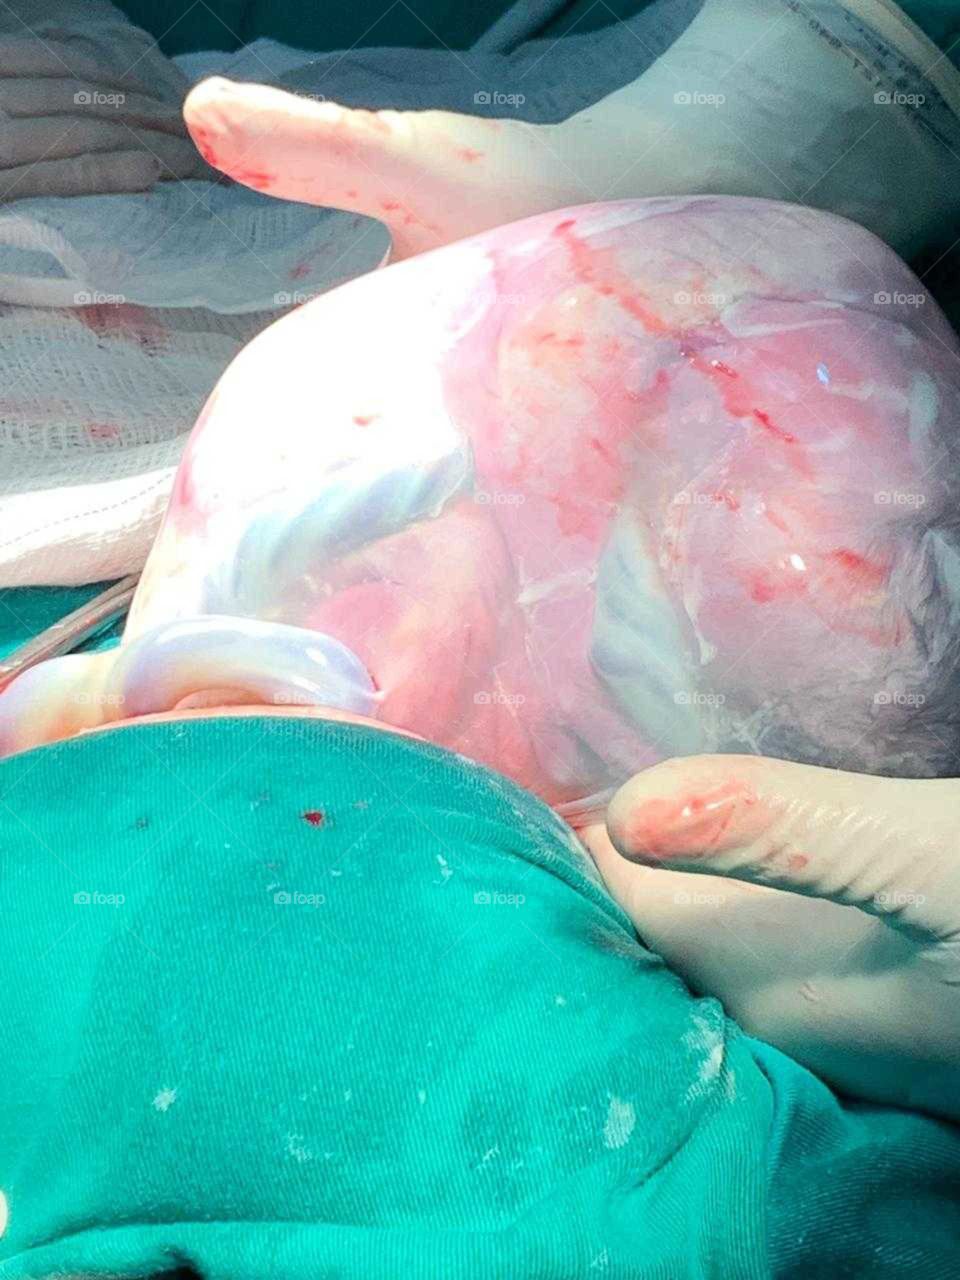 Nascimento de parto cesária com placenta sem romper.